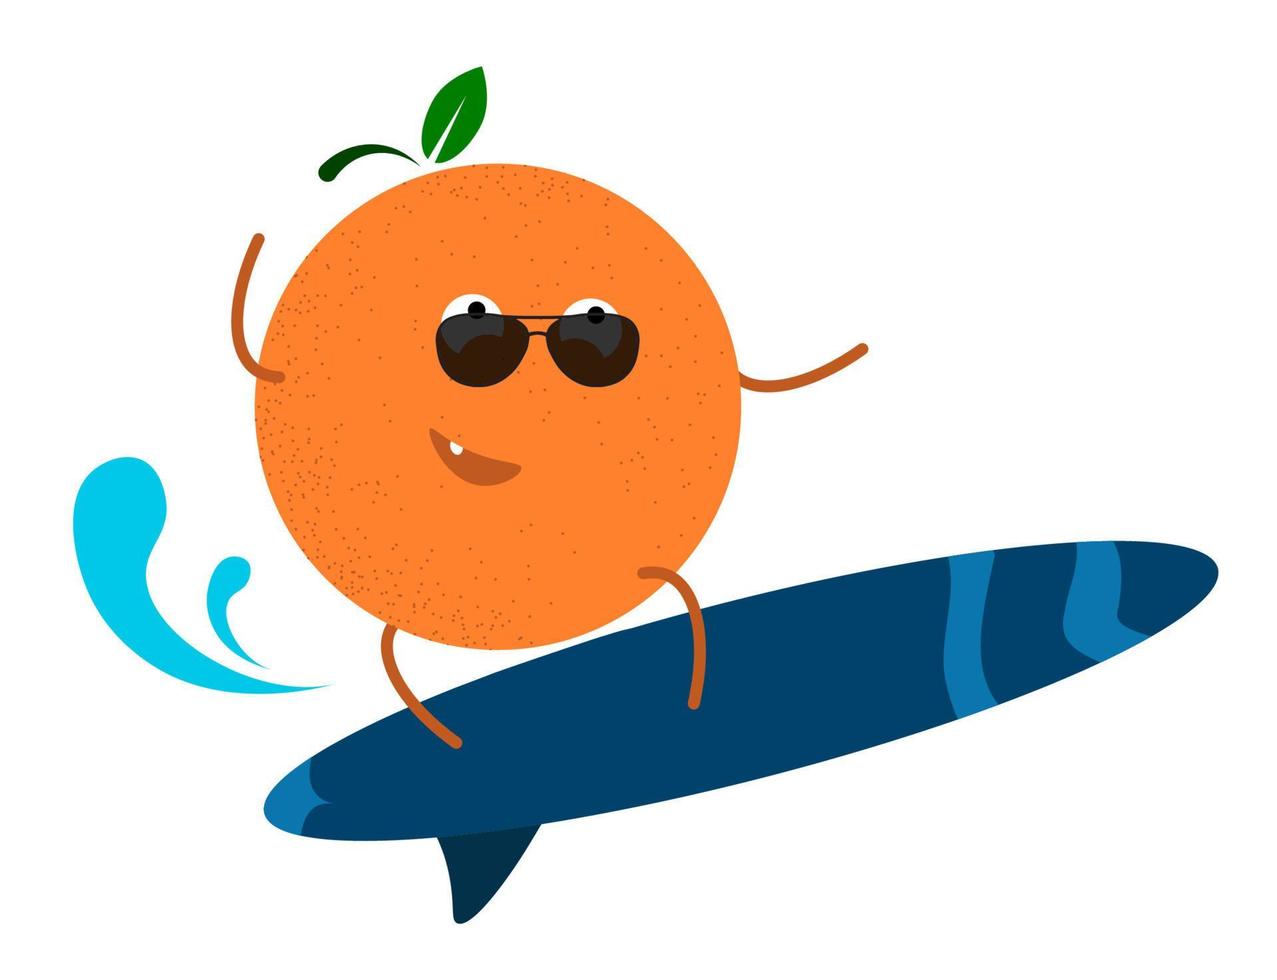 alegre laranja bronzeada no surf nas ondas. férias de verão ativas no mar. vetor em estilo cartoon